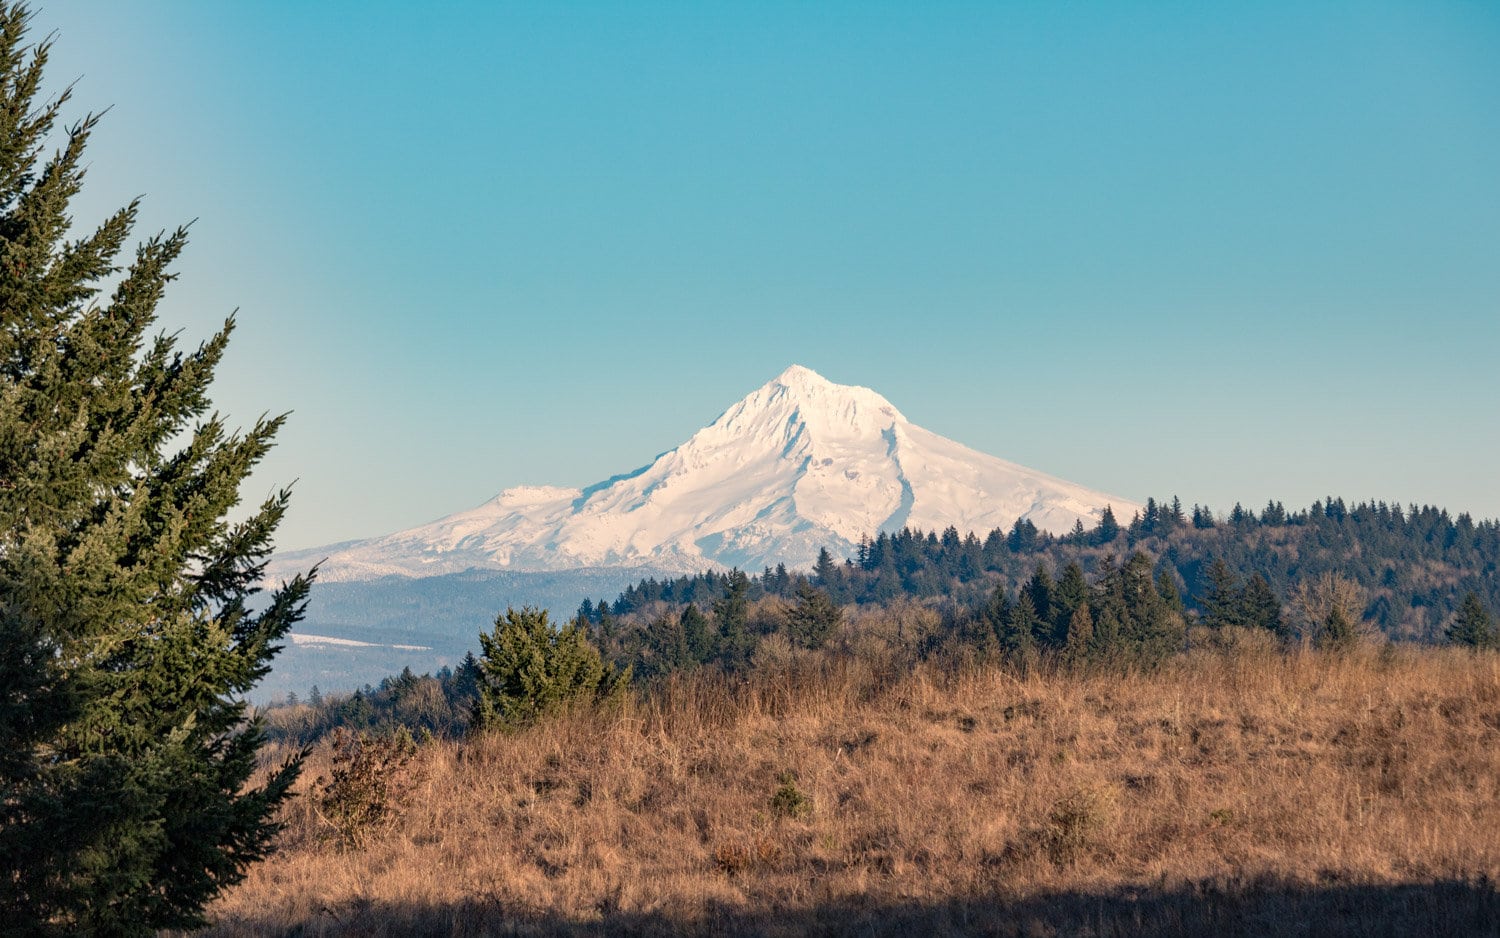 Mount Hood seen from Powell Butte in Portland, Oregon